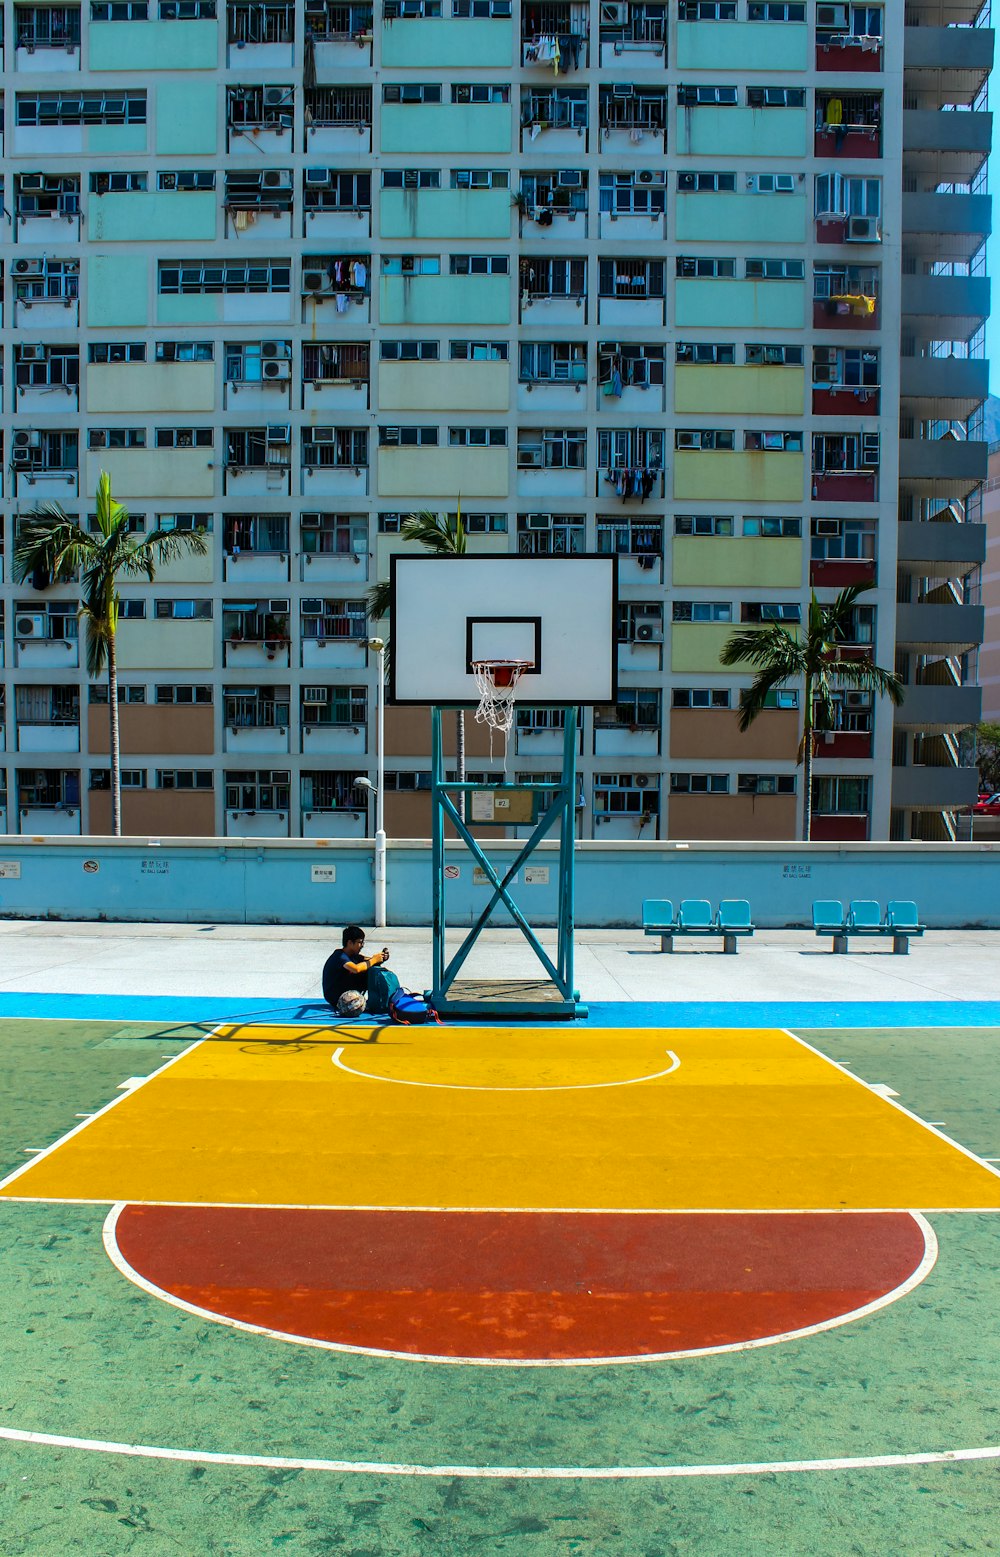 Homme assis sous le panier de basket-ball près du bâtiment pendant la journée